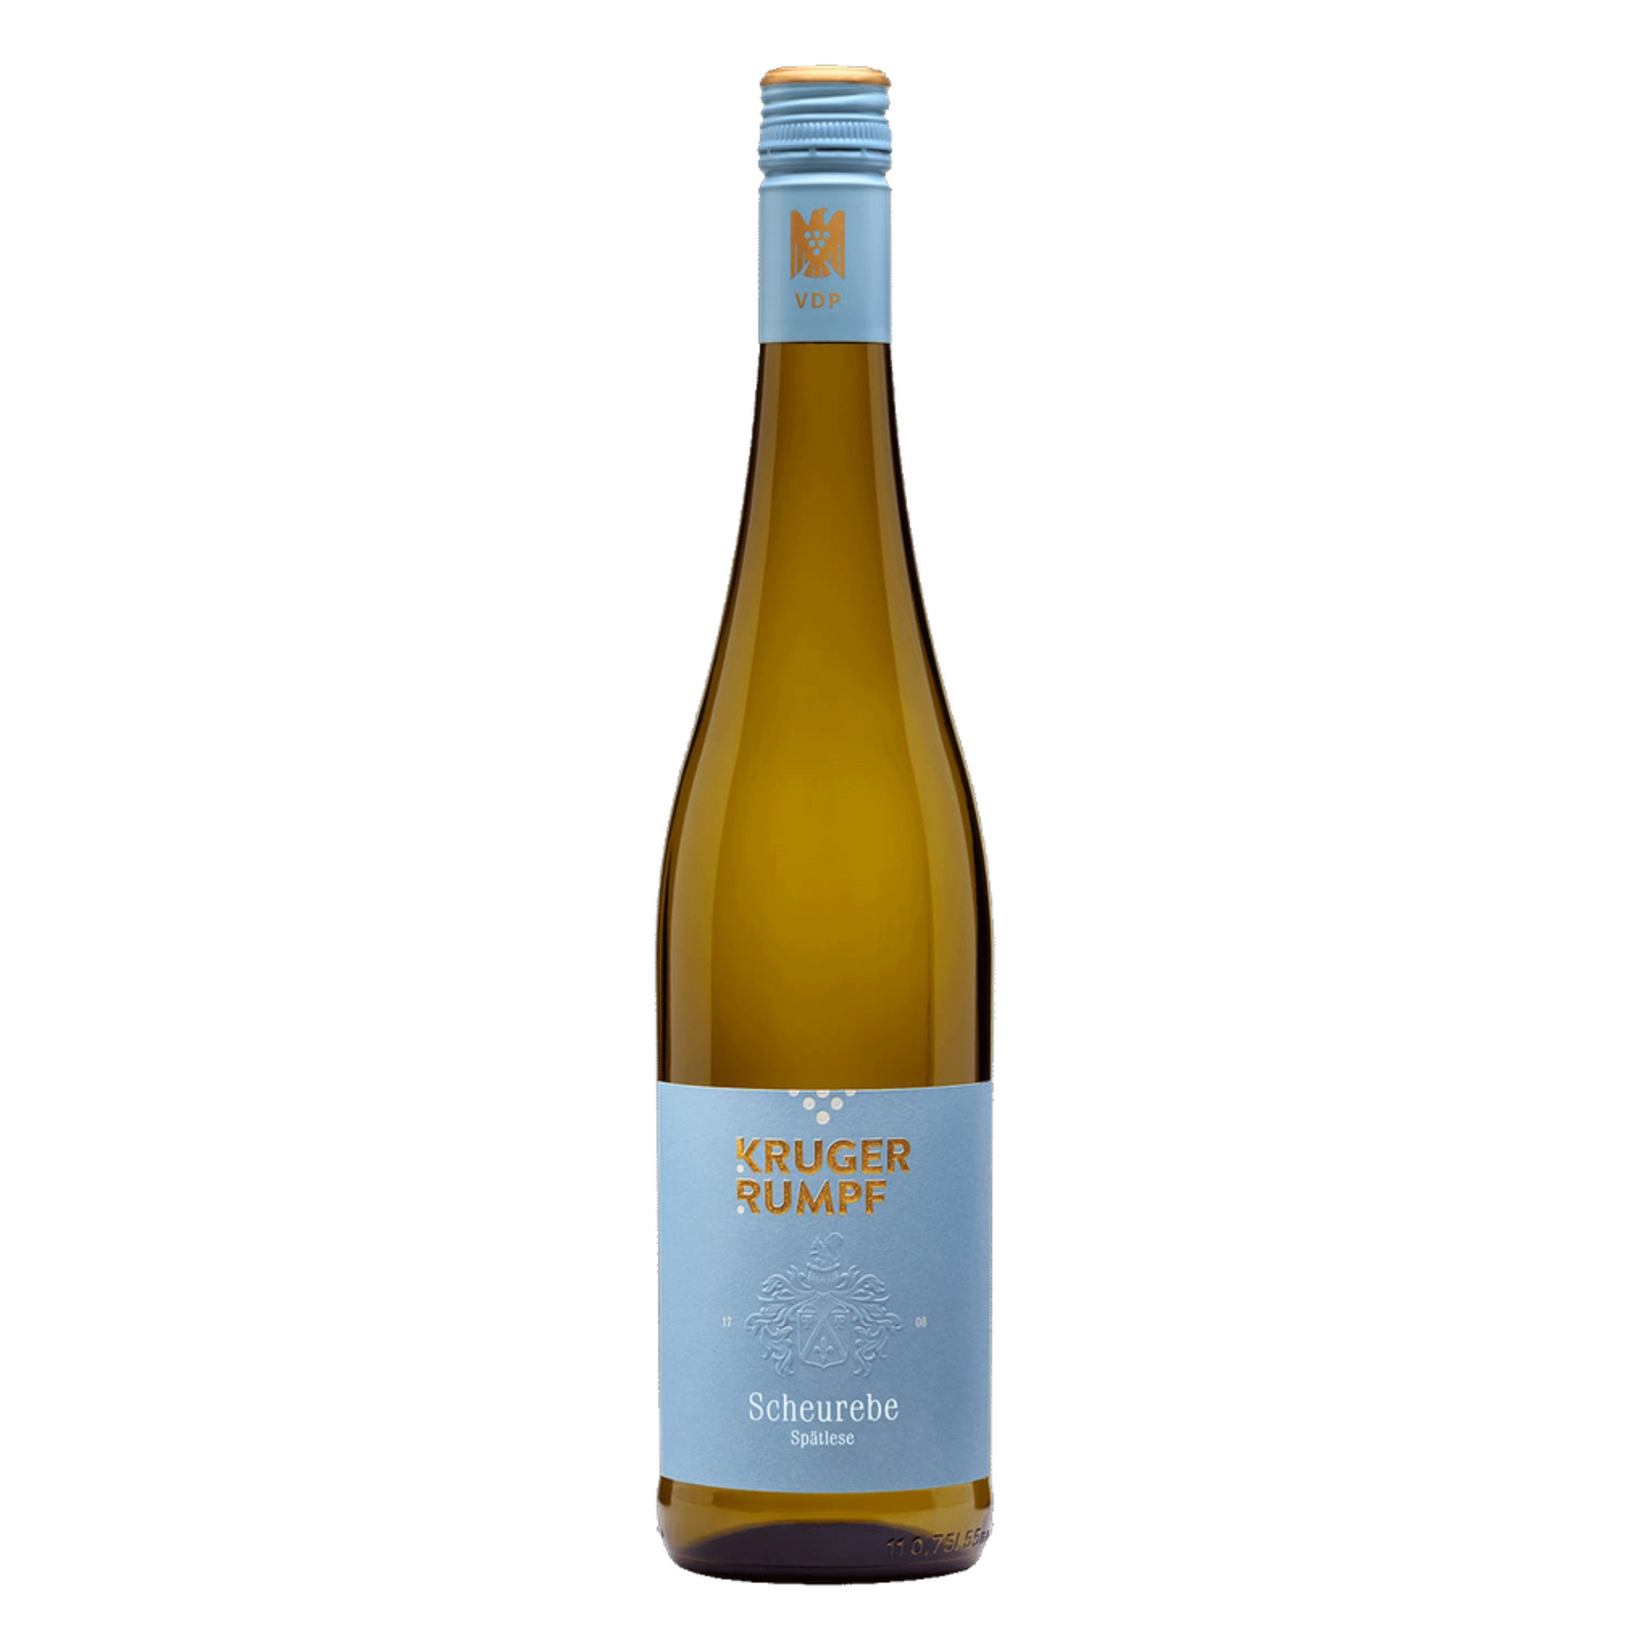 Wine Kruger Rumpf Scheurebe Spatlese 2019